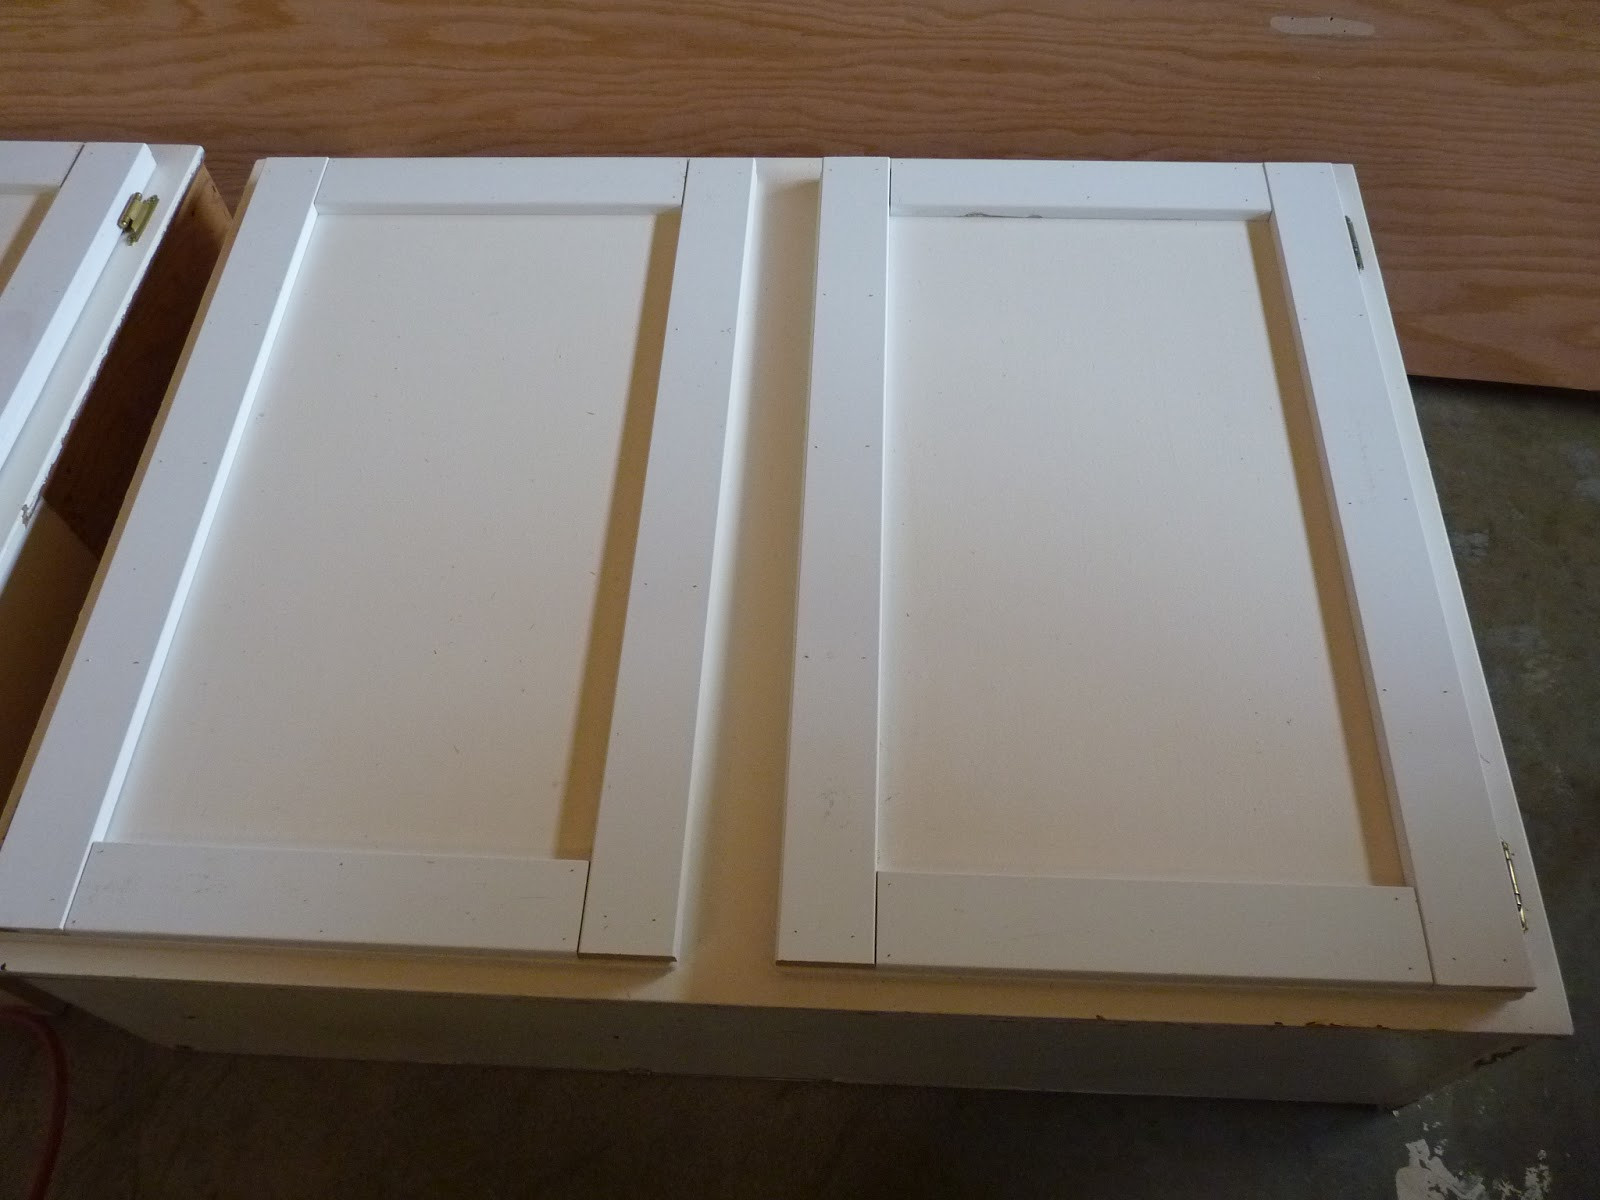 Best ideas about DIY Shaker Cabinet Door
. Save or Pin d i y d e s i g n Upcycled Shaker Panel Cabinet Doors Now.